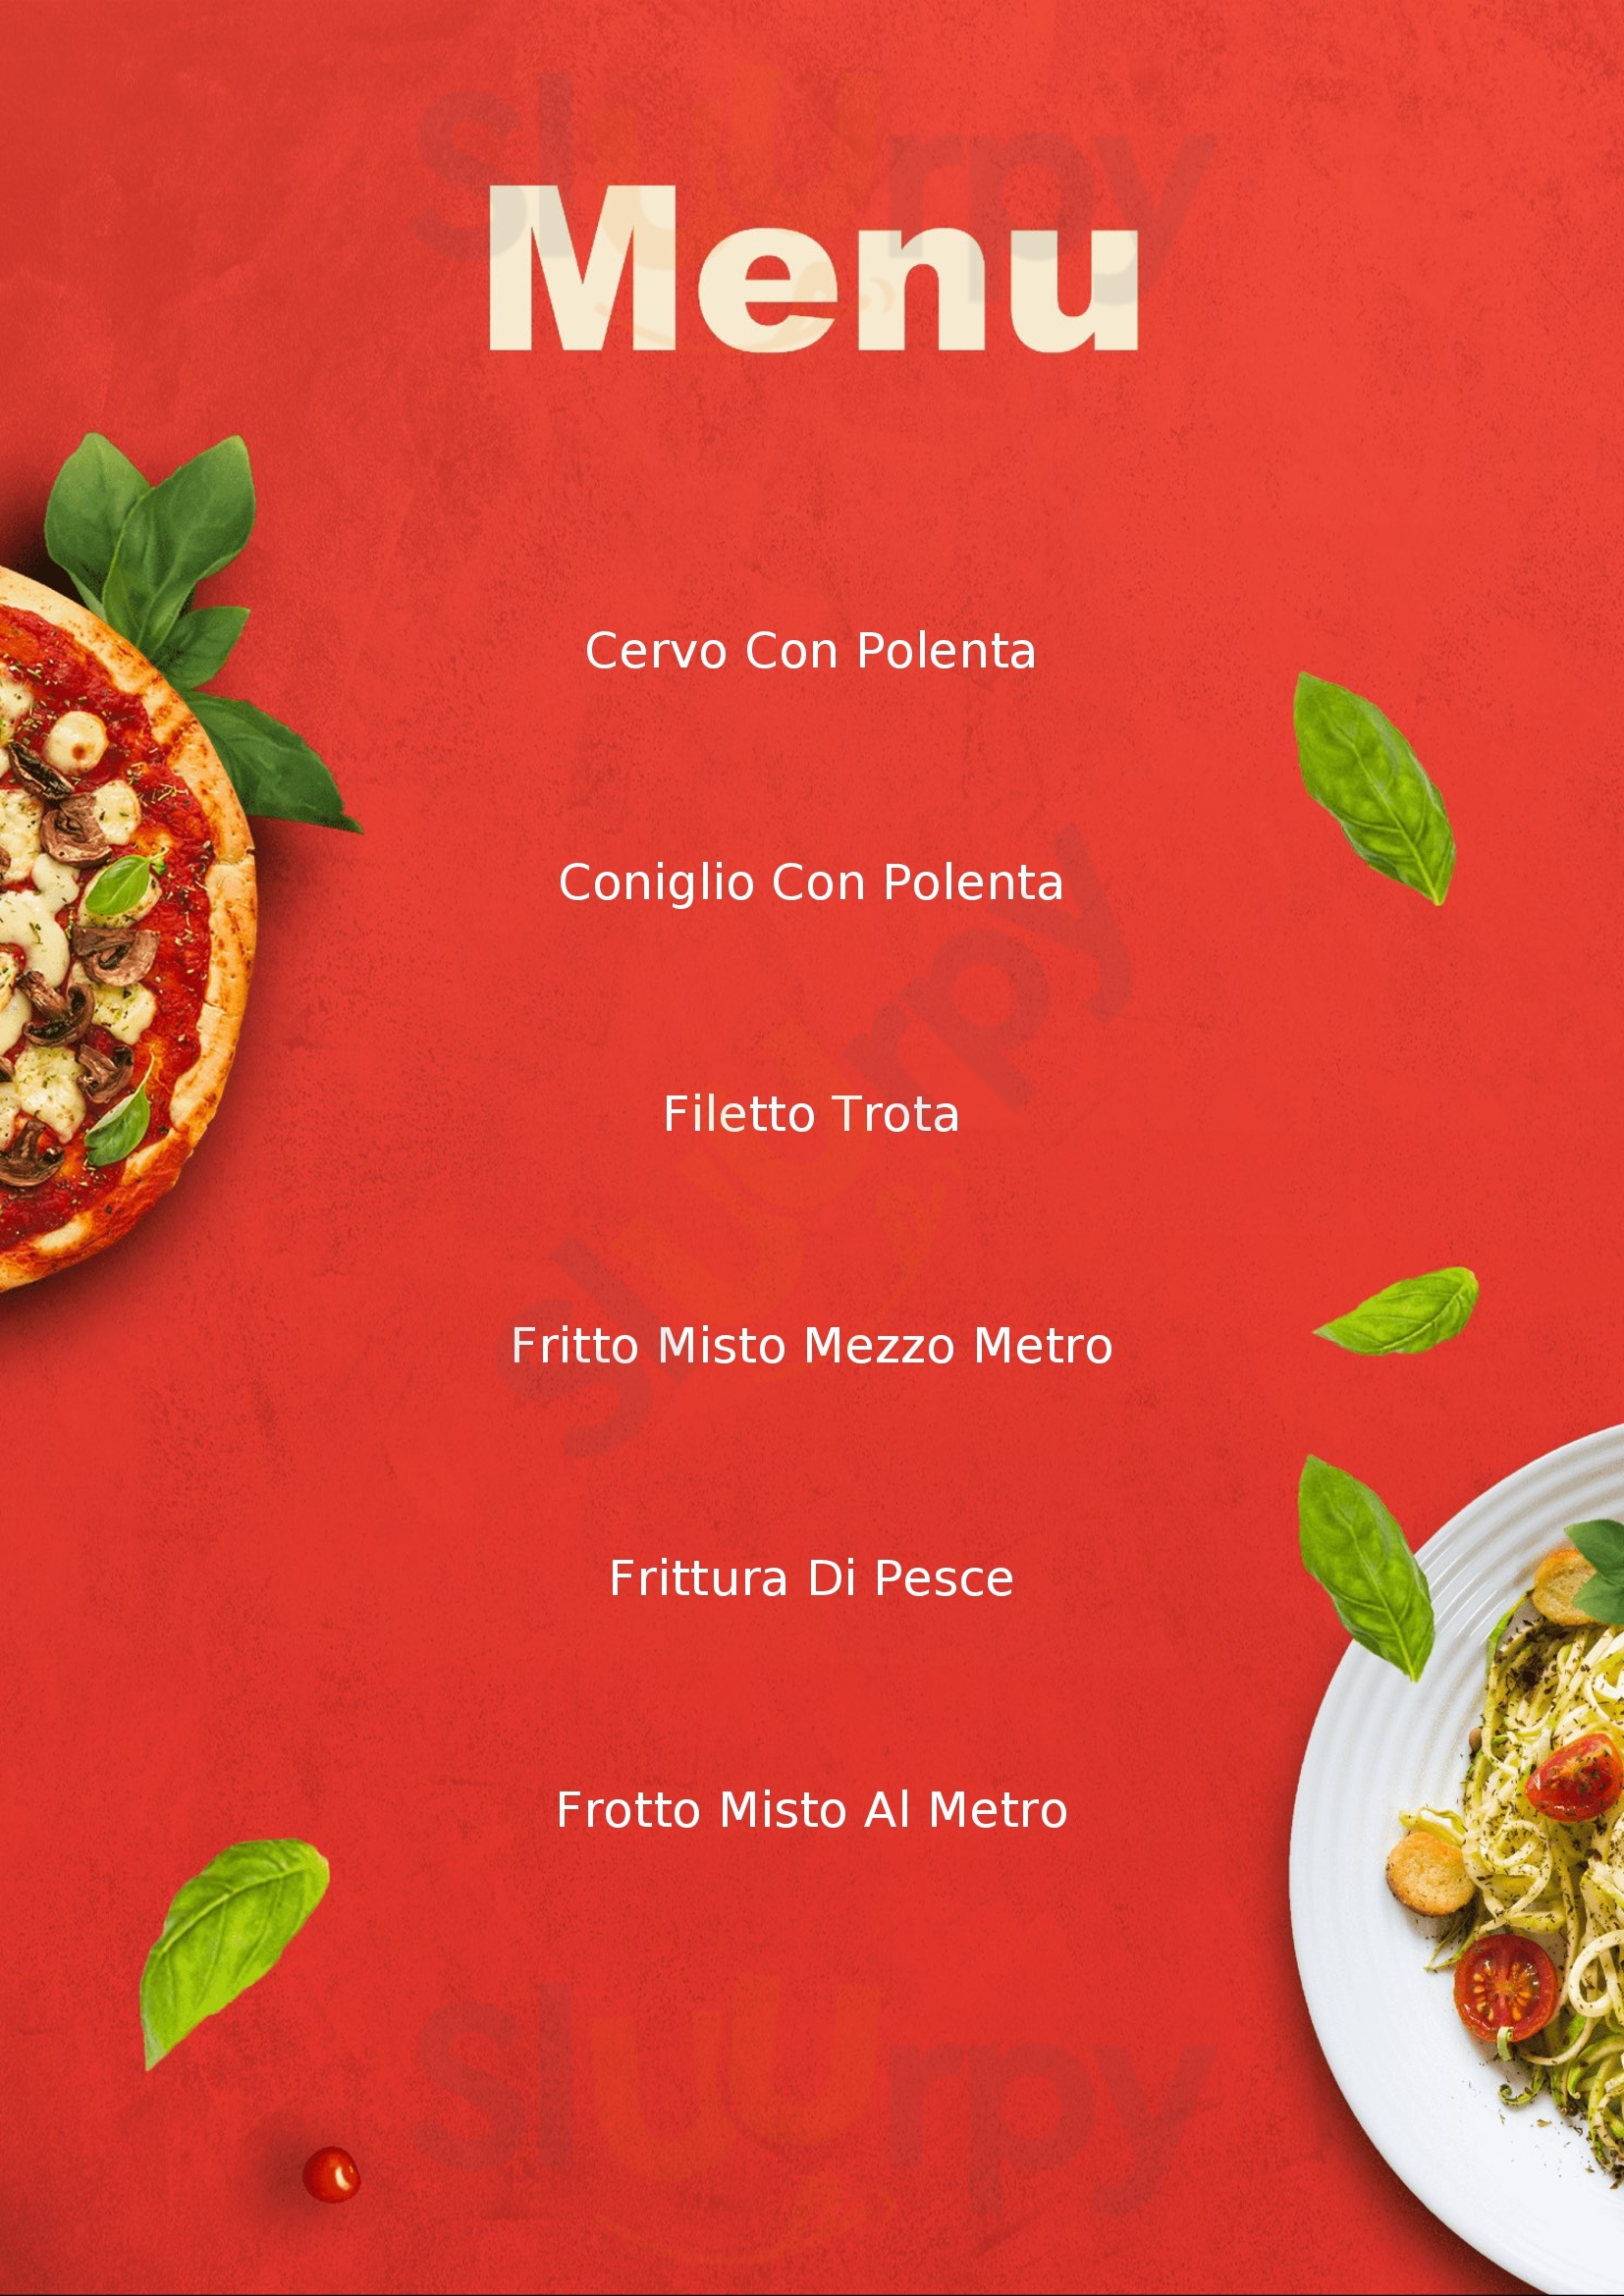 Il Moro Ristorante Pizzeria Parre menù 1 pagina